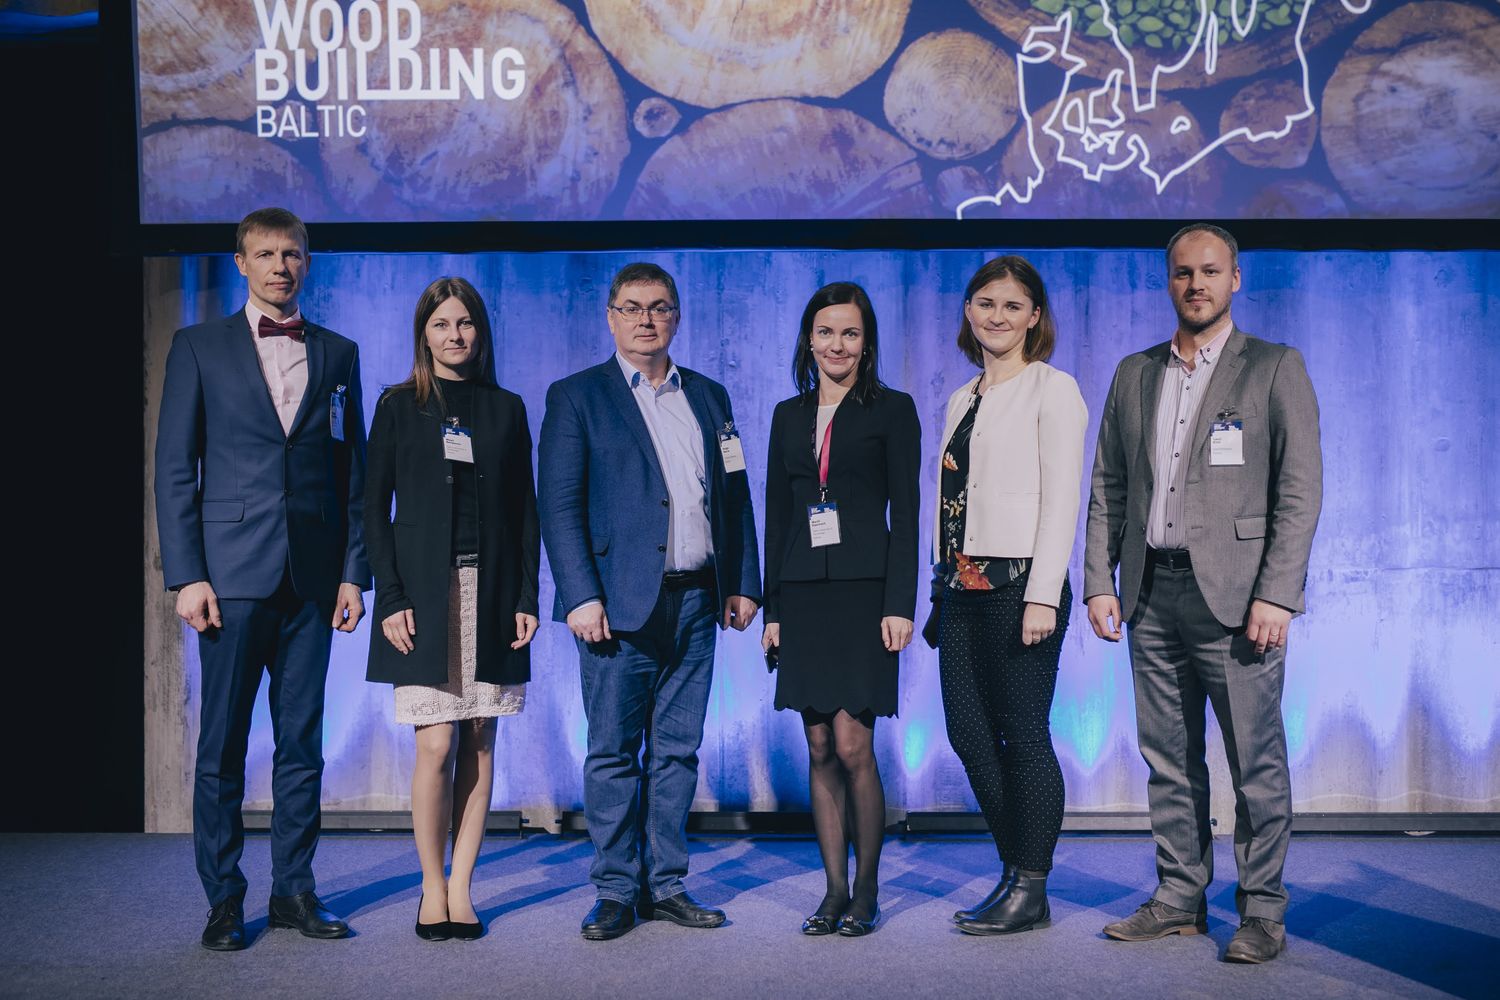 Casas de madera: SCM al lado de los profesionales del sector en el Fórum de Tallinn